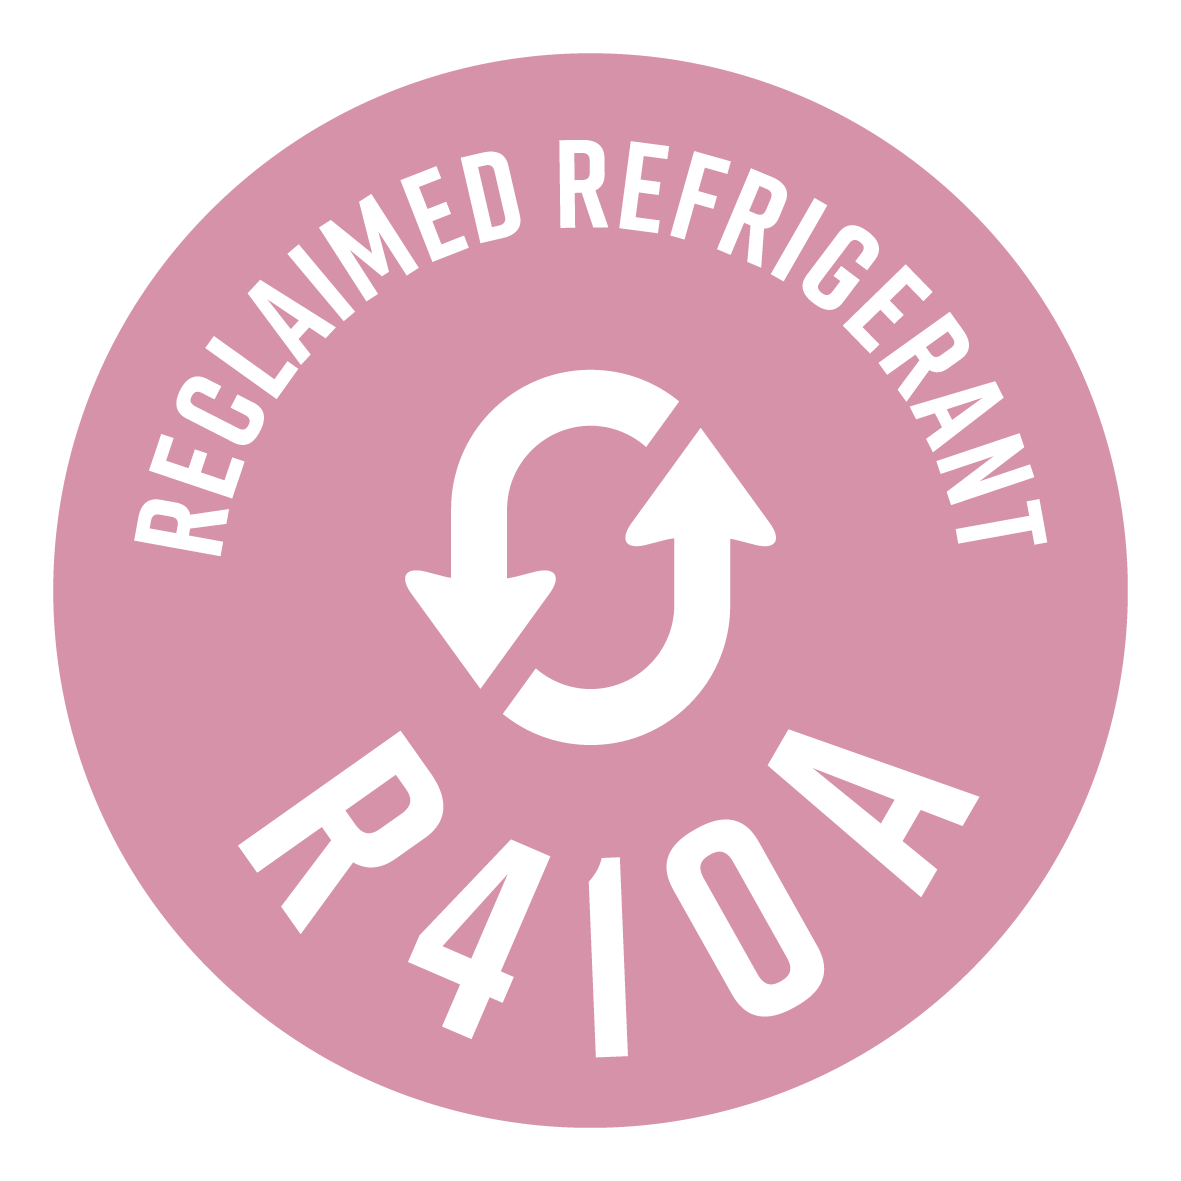 Utilizza solo R410A rigenerato: un refrigerante identico all'originale, ma recuperato da impianti esistenti. Per un'economia sempre più circolare.